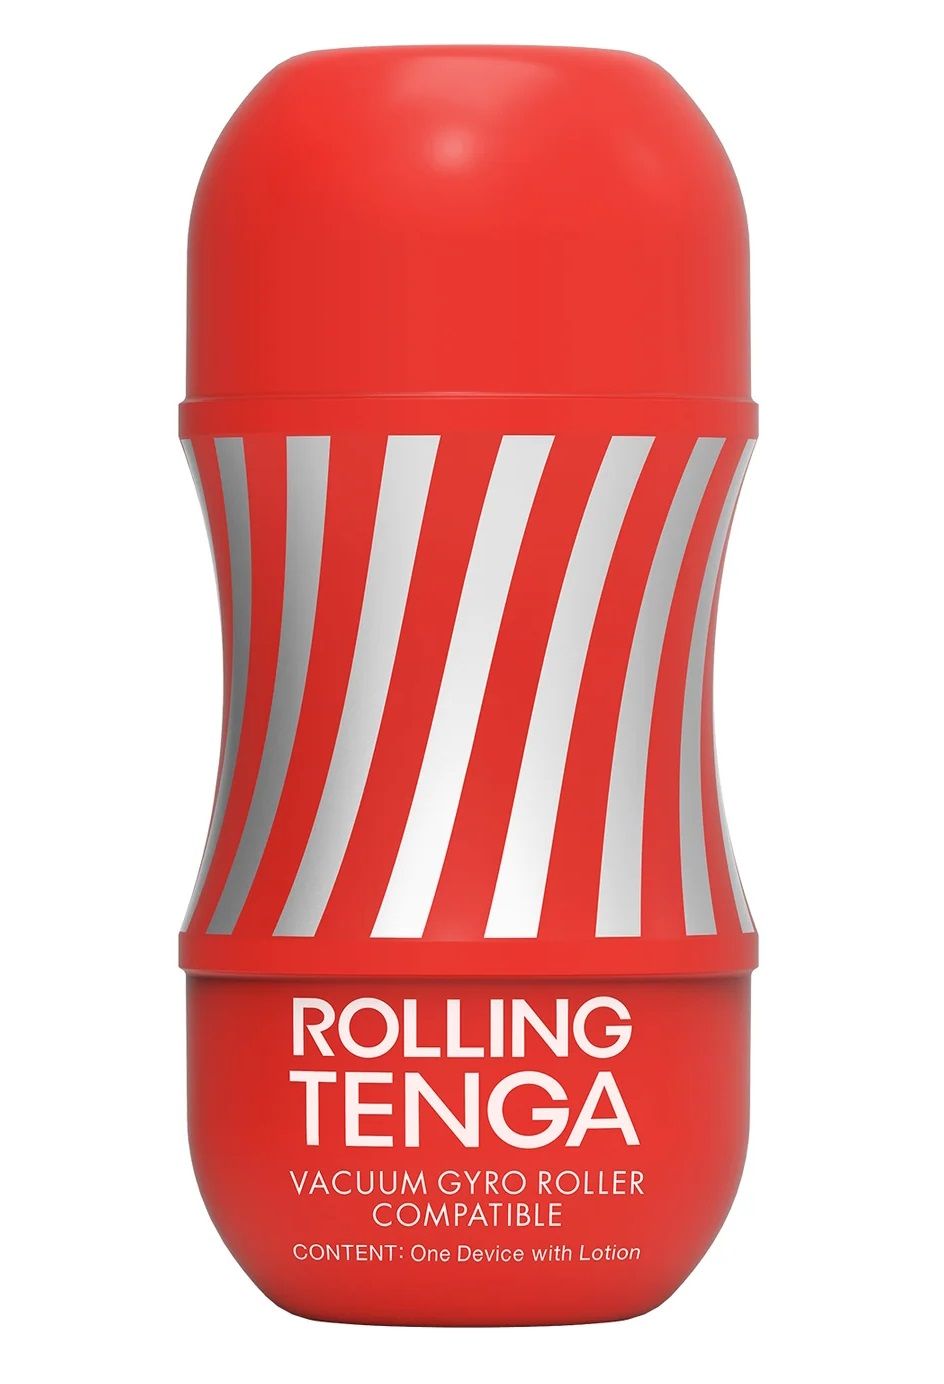 Мастурбатор Rolling Tenga Cup Strong способен по-настоящему закрутить* ваше удовольствие! Новое, вращающееся воздействие во время игр соло или с партнером  не оставит вас равнодушным! Красный мастурбатор - средний уровень стимуляции, подходит большинству мужчин. Для комфорта и разнообразия ощущений - рекомендуем использовать со смазками на водной основе от Tenga.<br><br>  * - функция вращения активируется при использовании устройства Tenga Vacuum Gyro Roller (приобретается отдельно).